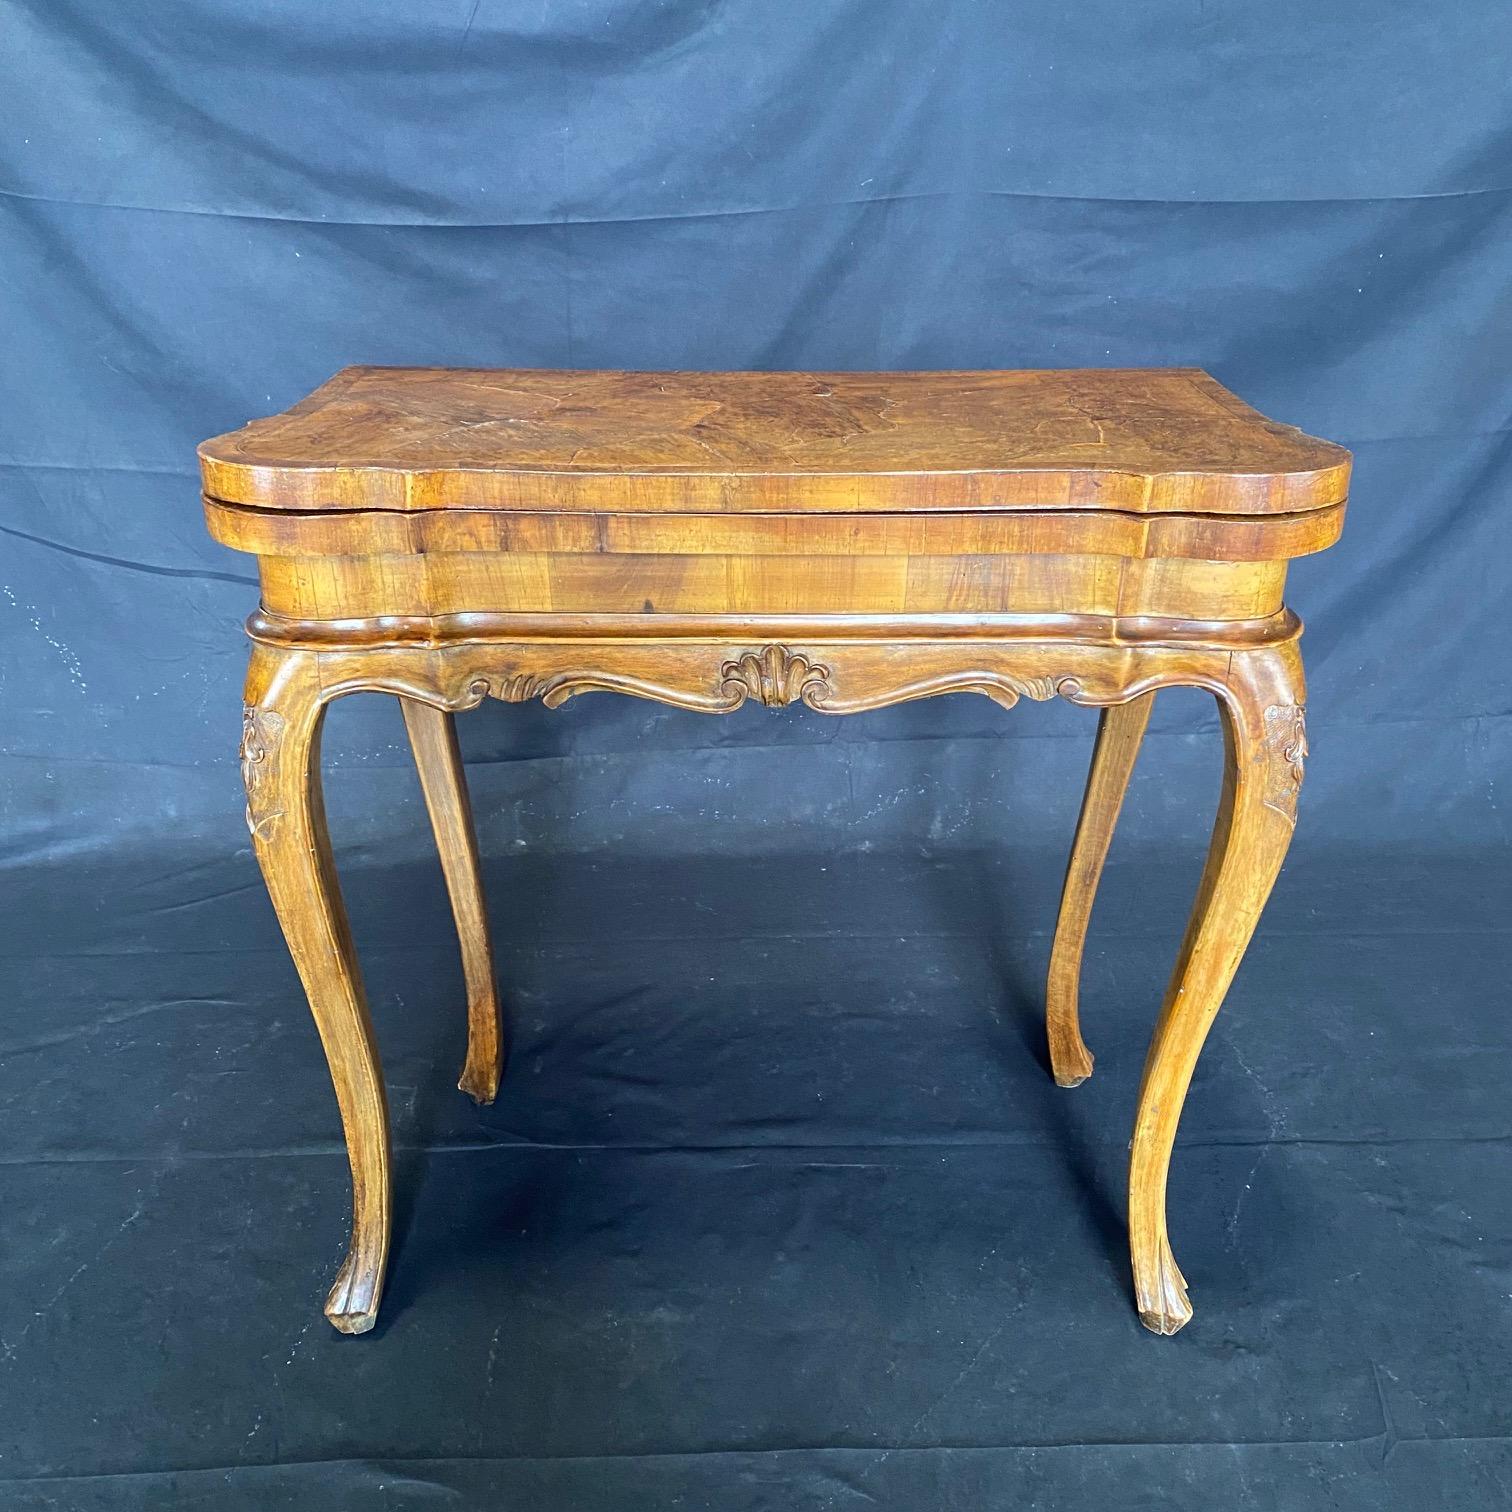 Italienischer Spiel- oder Kartentisch aus genopptem Nussbaum des 18. Jahrhunderts, Beistelltisch oder Konsole, um 1780. Dieser sehr elegante Tisch ist aus Nussbaumholz gefertigt und seine Platte ist aus wunderschönem, genopptem Nussbaumholz